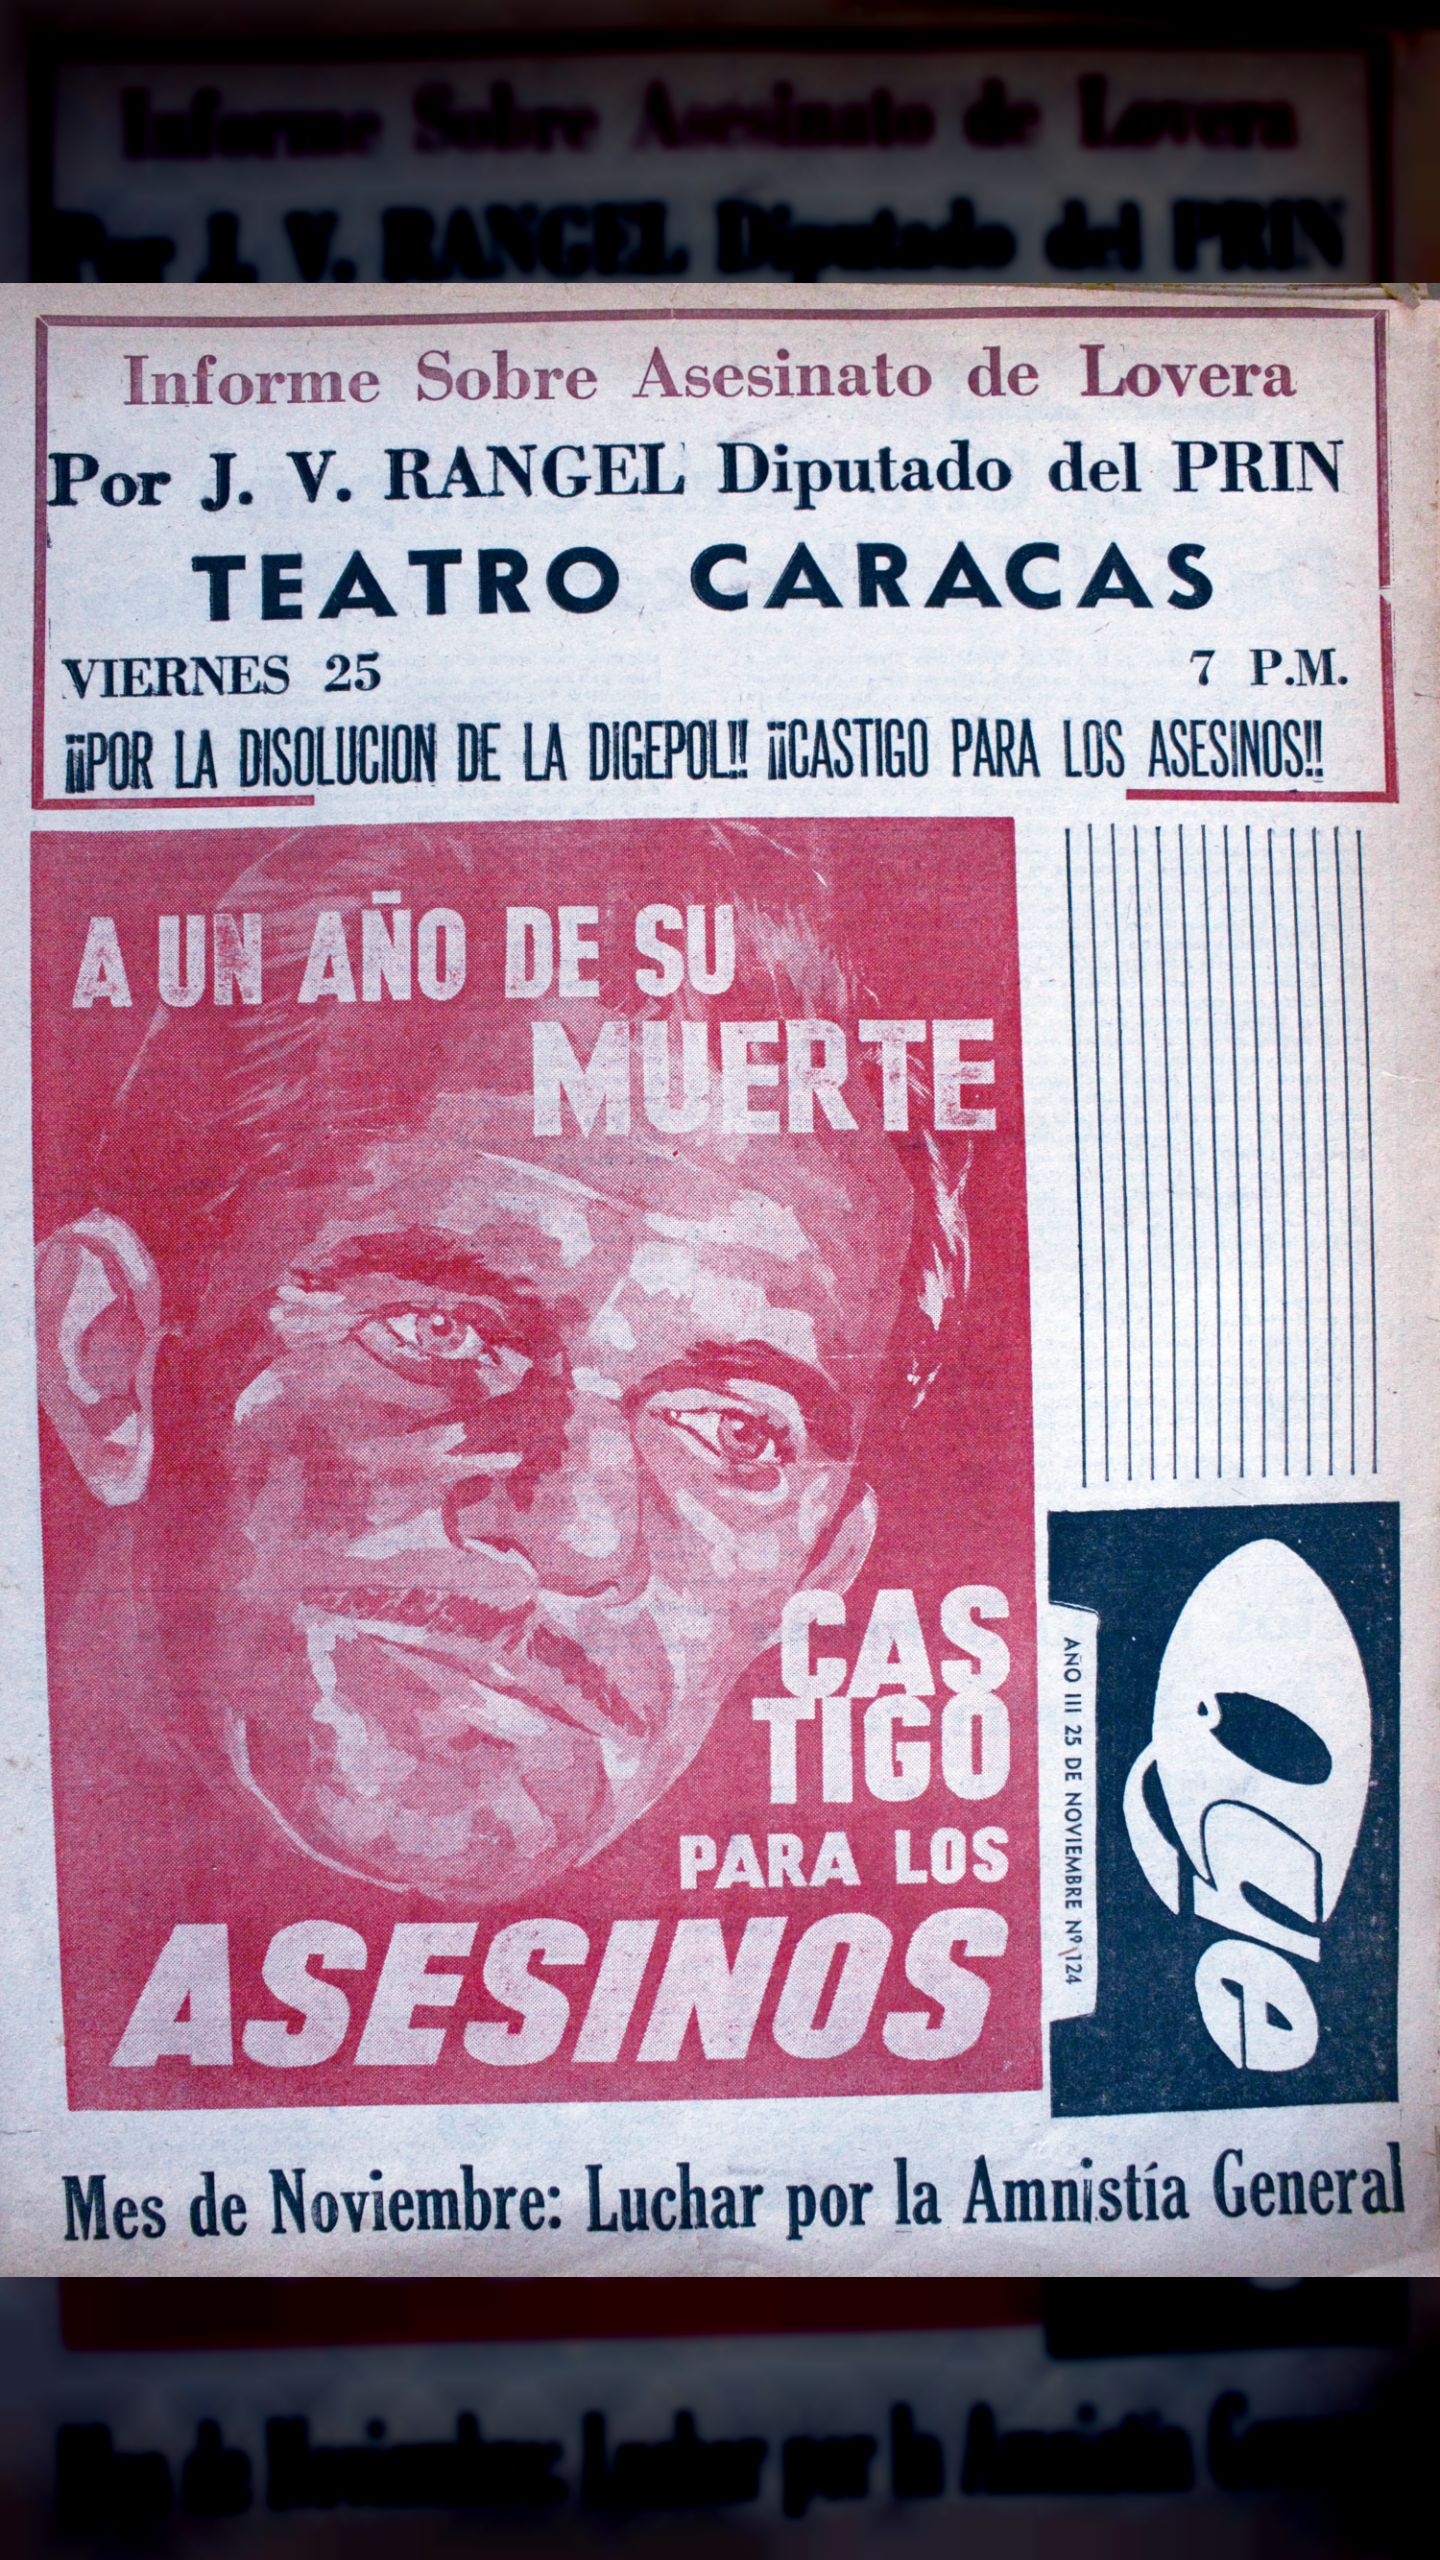 Cuerpos represivos preparan atentados contra dirigentes universitarios (Semanario ¿Qué Pasa?, Noviembre 1966)